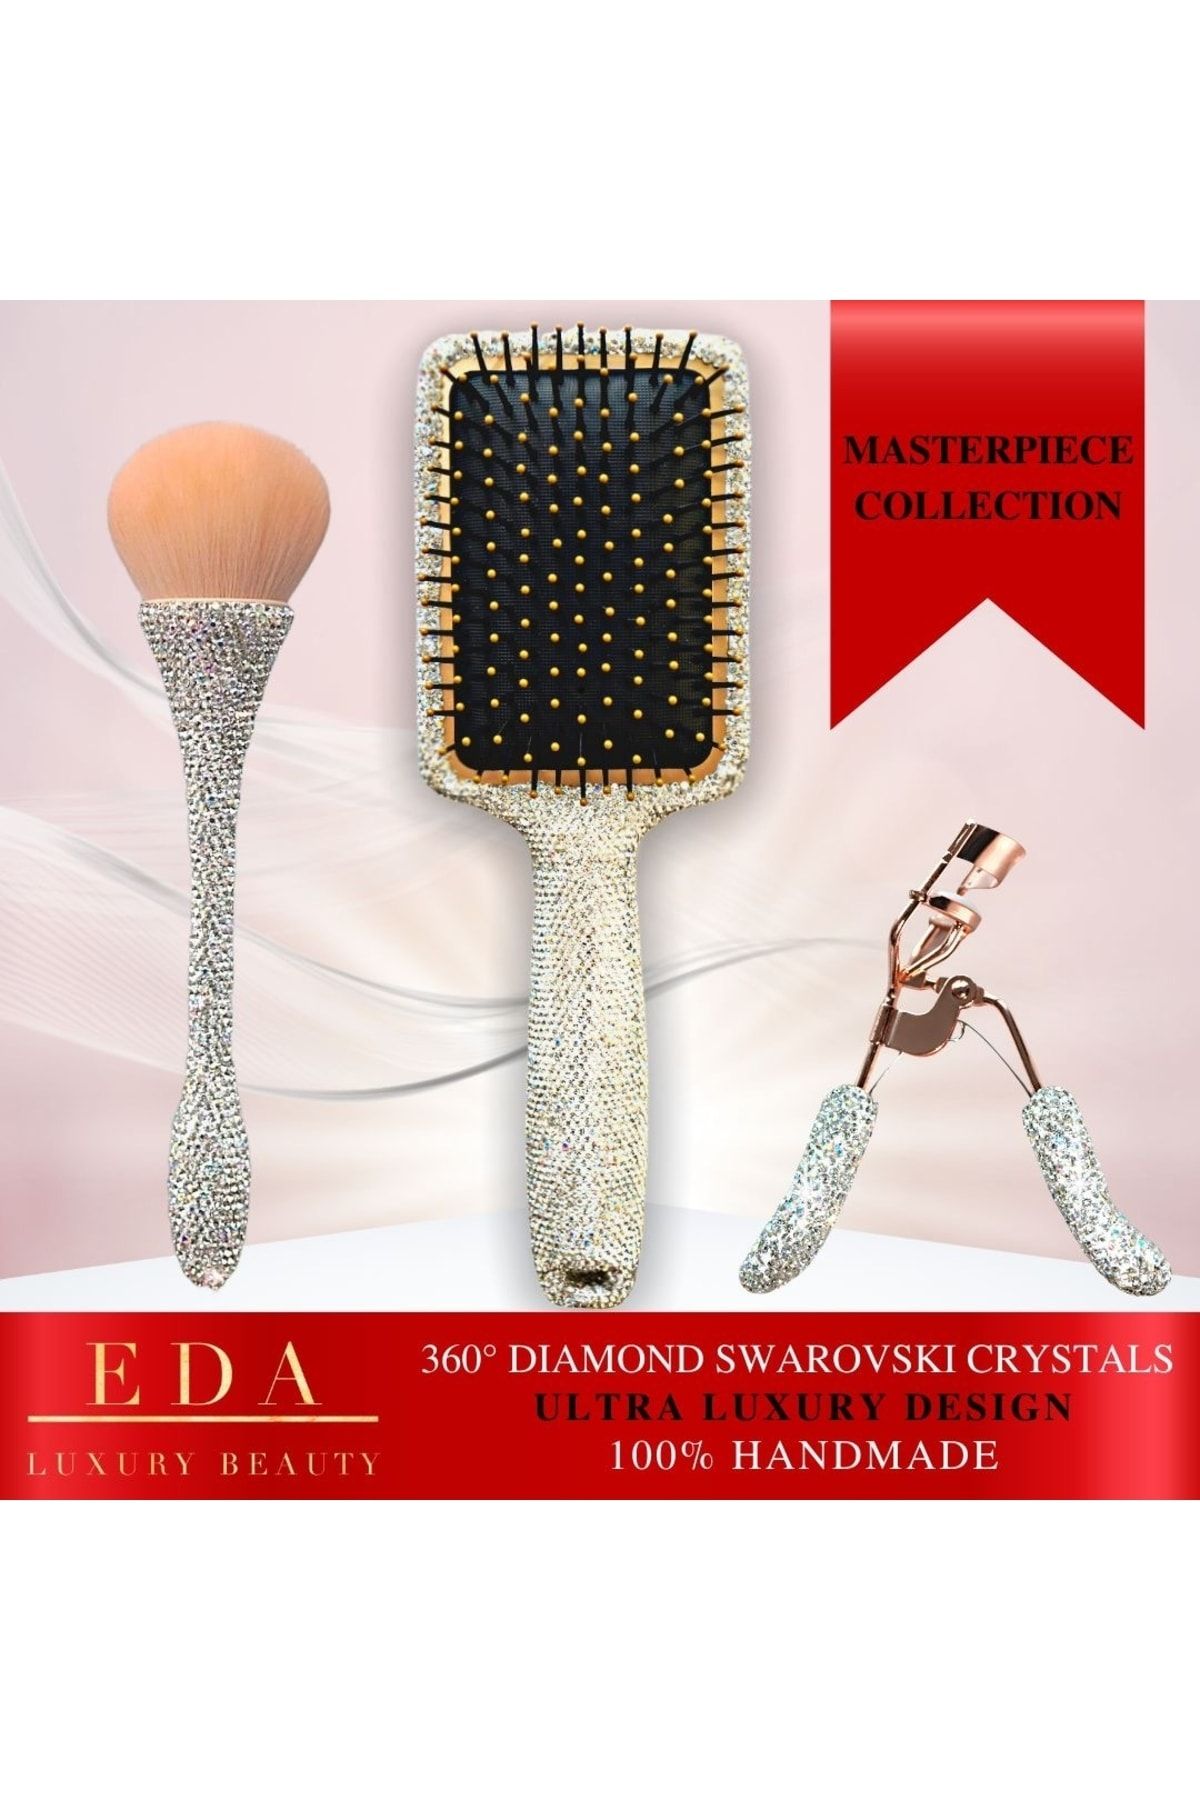 EDA LUXURY BEAUTY 360° Diamond Swarovski Kristal Taşlı Lüks Makyaj Güzellik Bakım Kadın Özel Hediye Makeup Gift Set